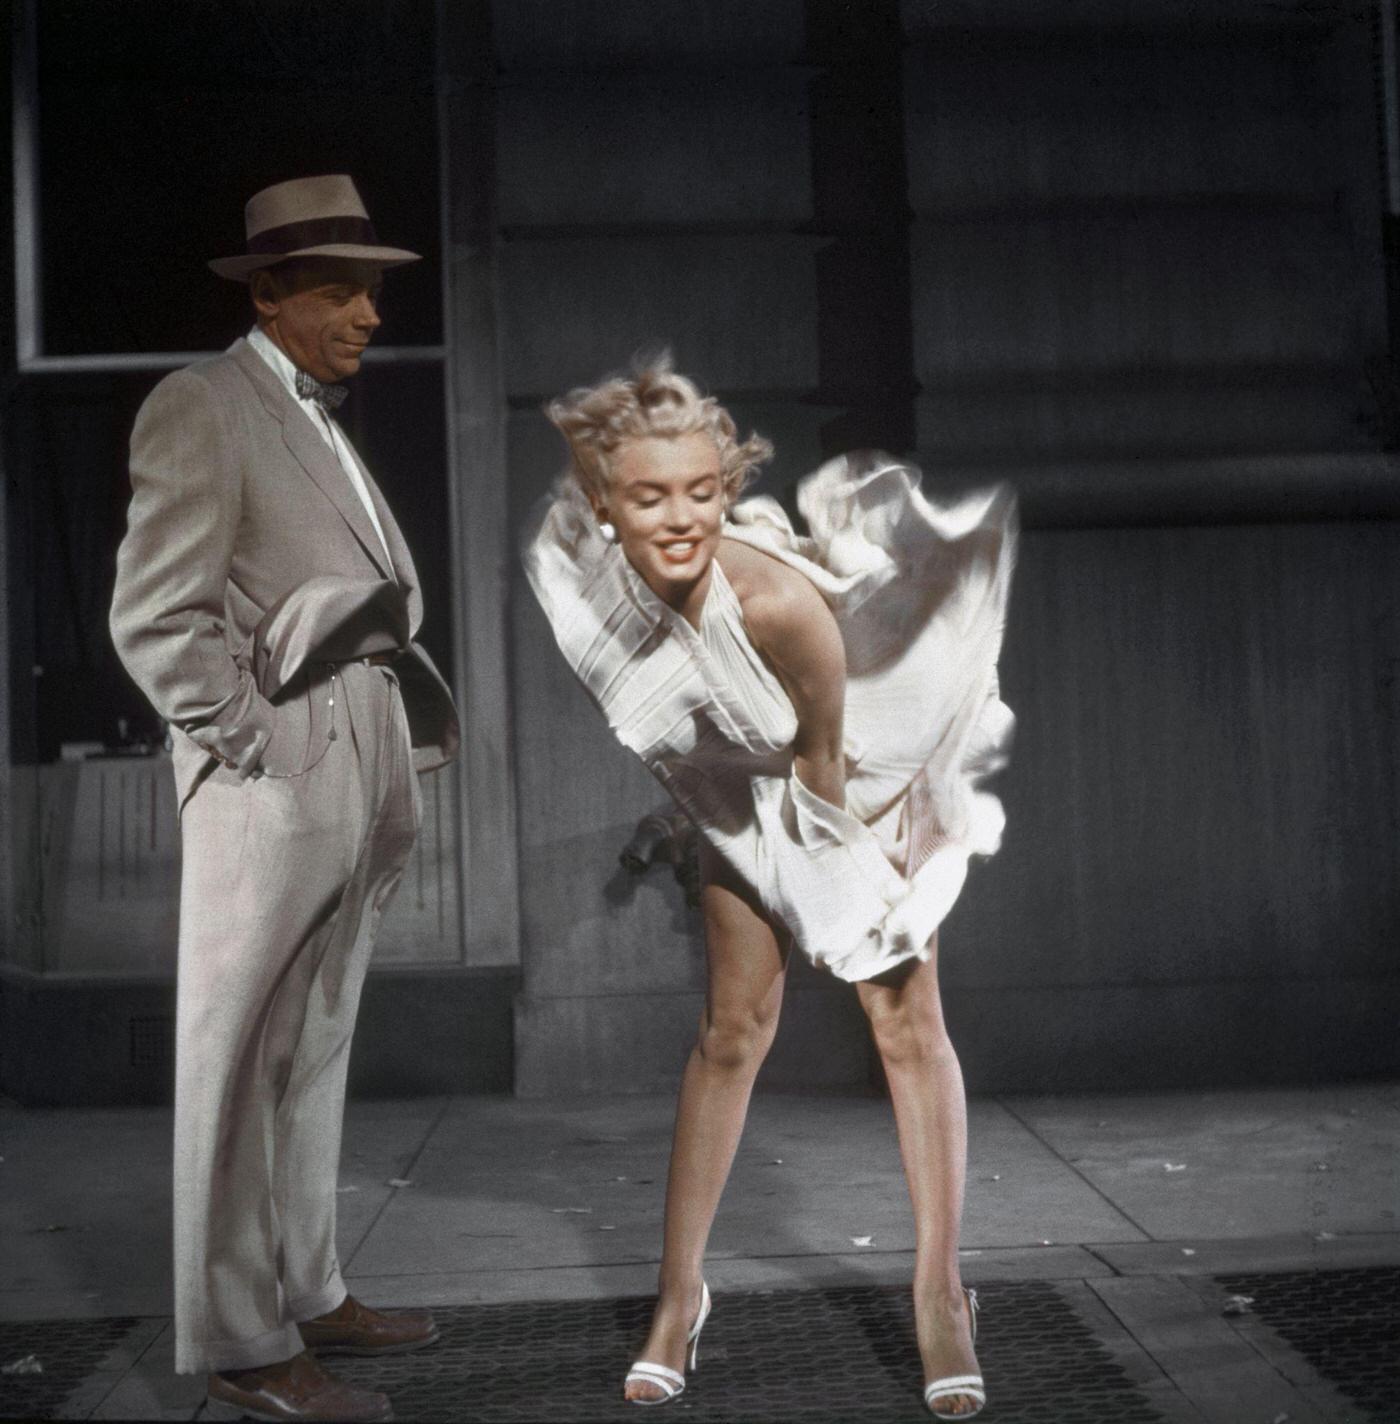 Marilyn Monroe's white dress: Remember when